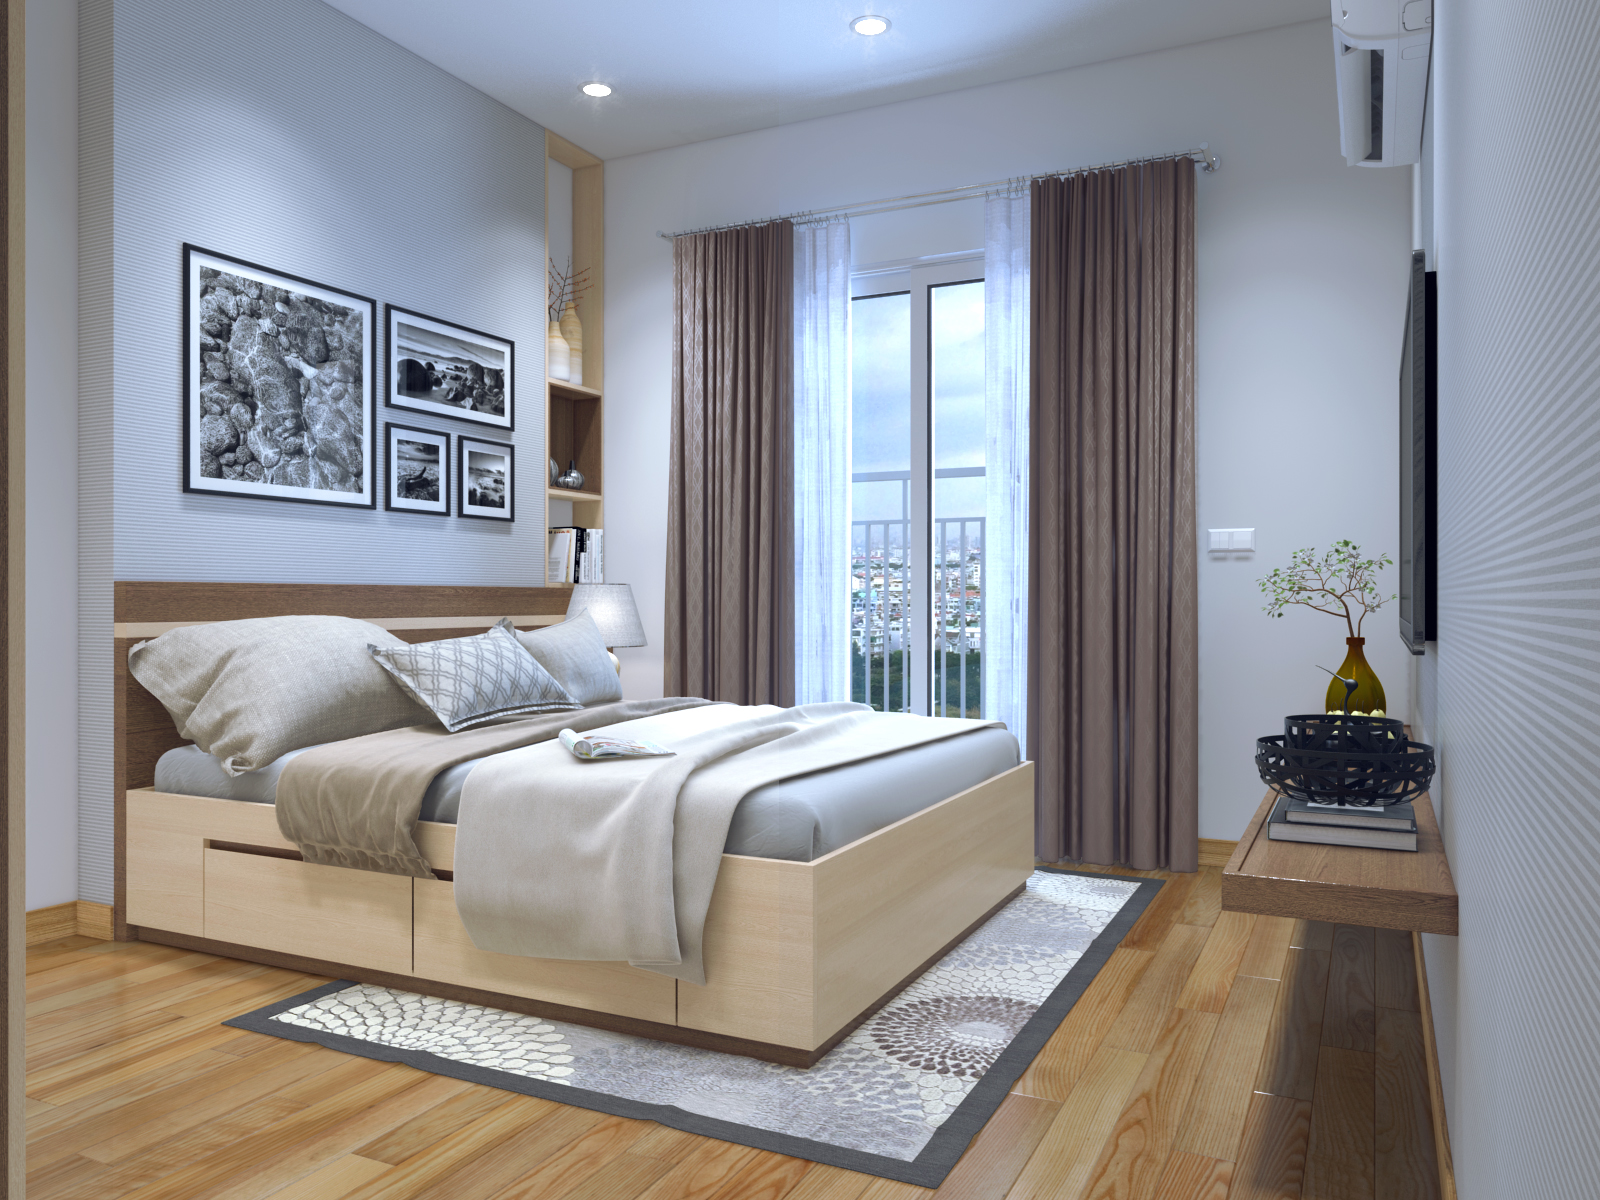 Thiết kê nội thất căn hộ hiện đại để tối ưu hóa công năng phòng ngủ chính